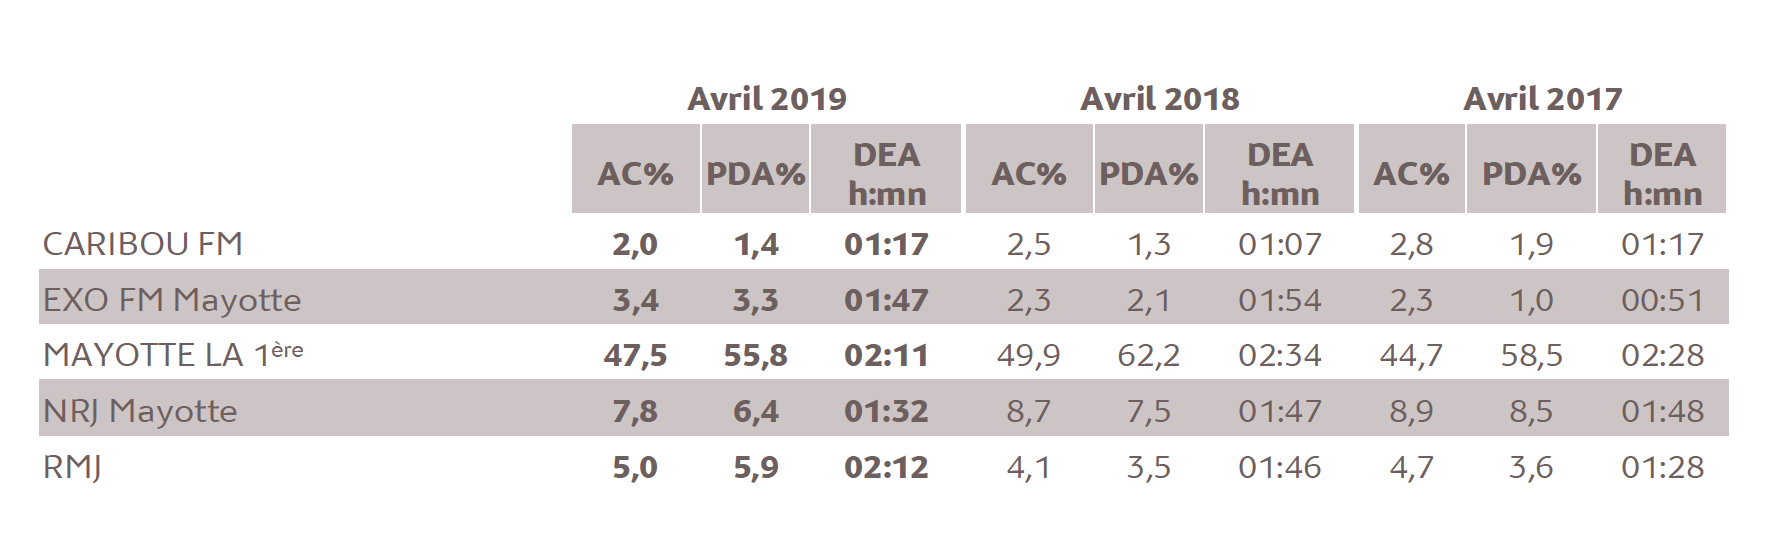 Source : Médiamétrie - Etude ad hoc Mayotte - Avril 2019 - Copyright Médiamétrie - Tous droits réservés